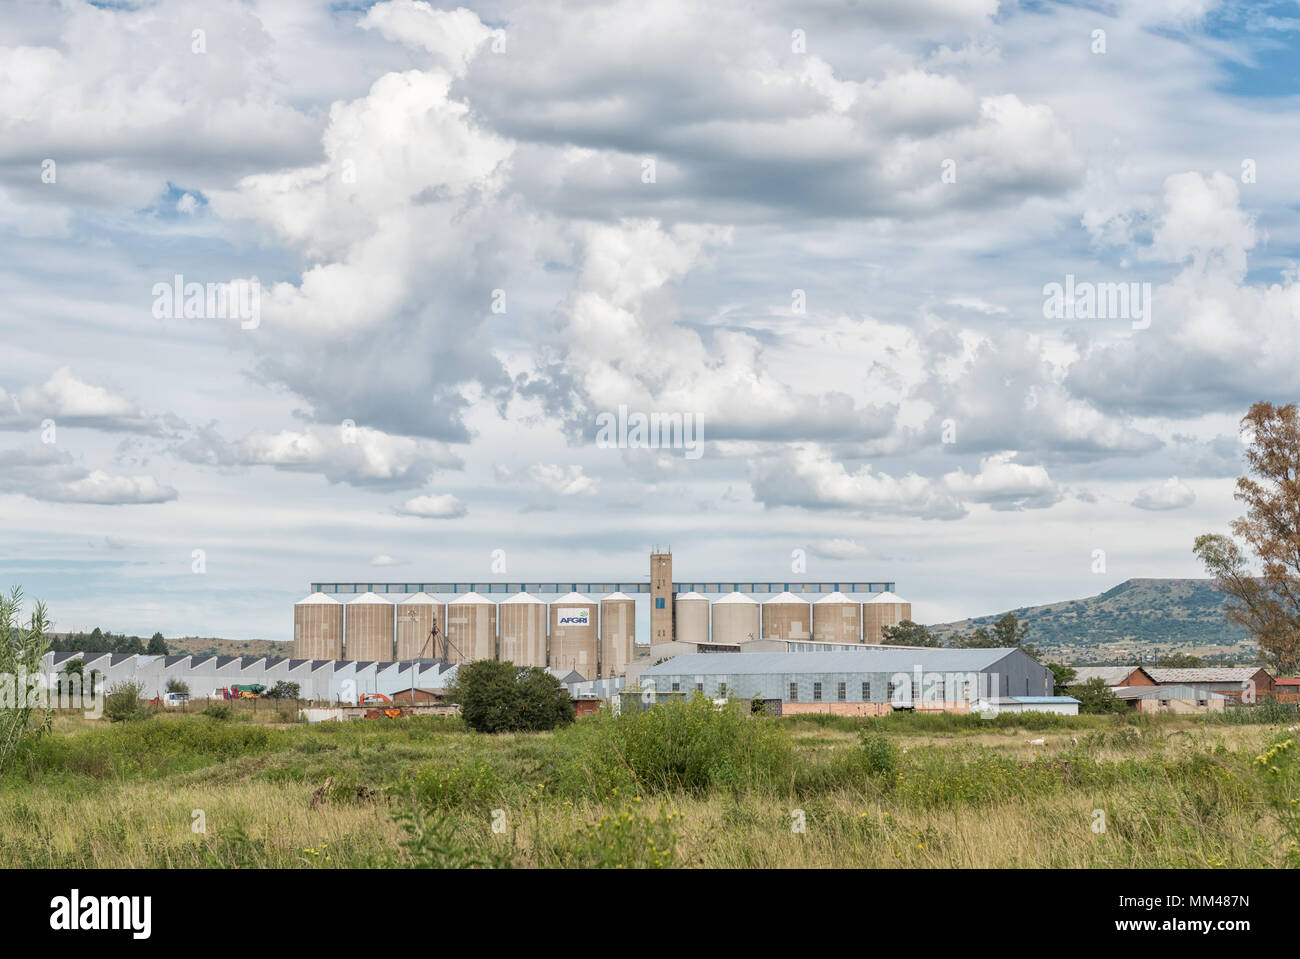 DUNDEE, SUD AFRICA - 21 Marzo 2018: la zona industriale di Dundee in Kwazulu-Natal provincia. Silos per il grano, magazzini e una fabbrica è visibile Foto Stock